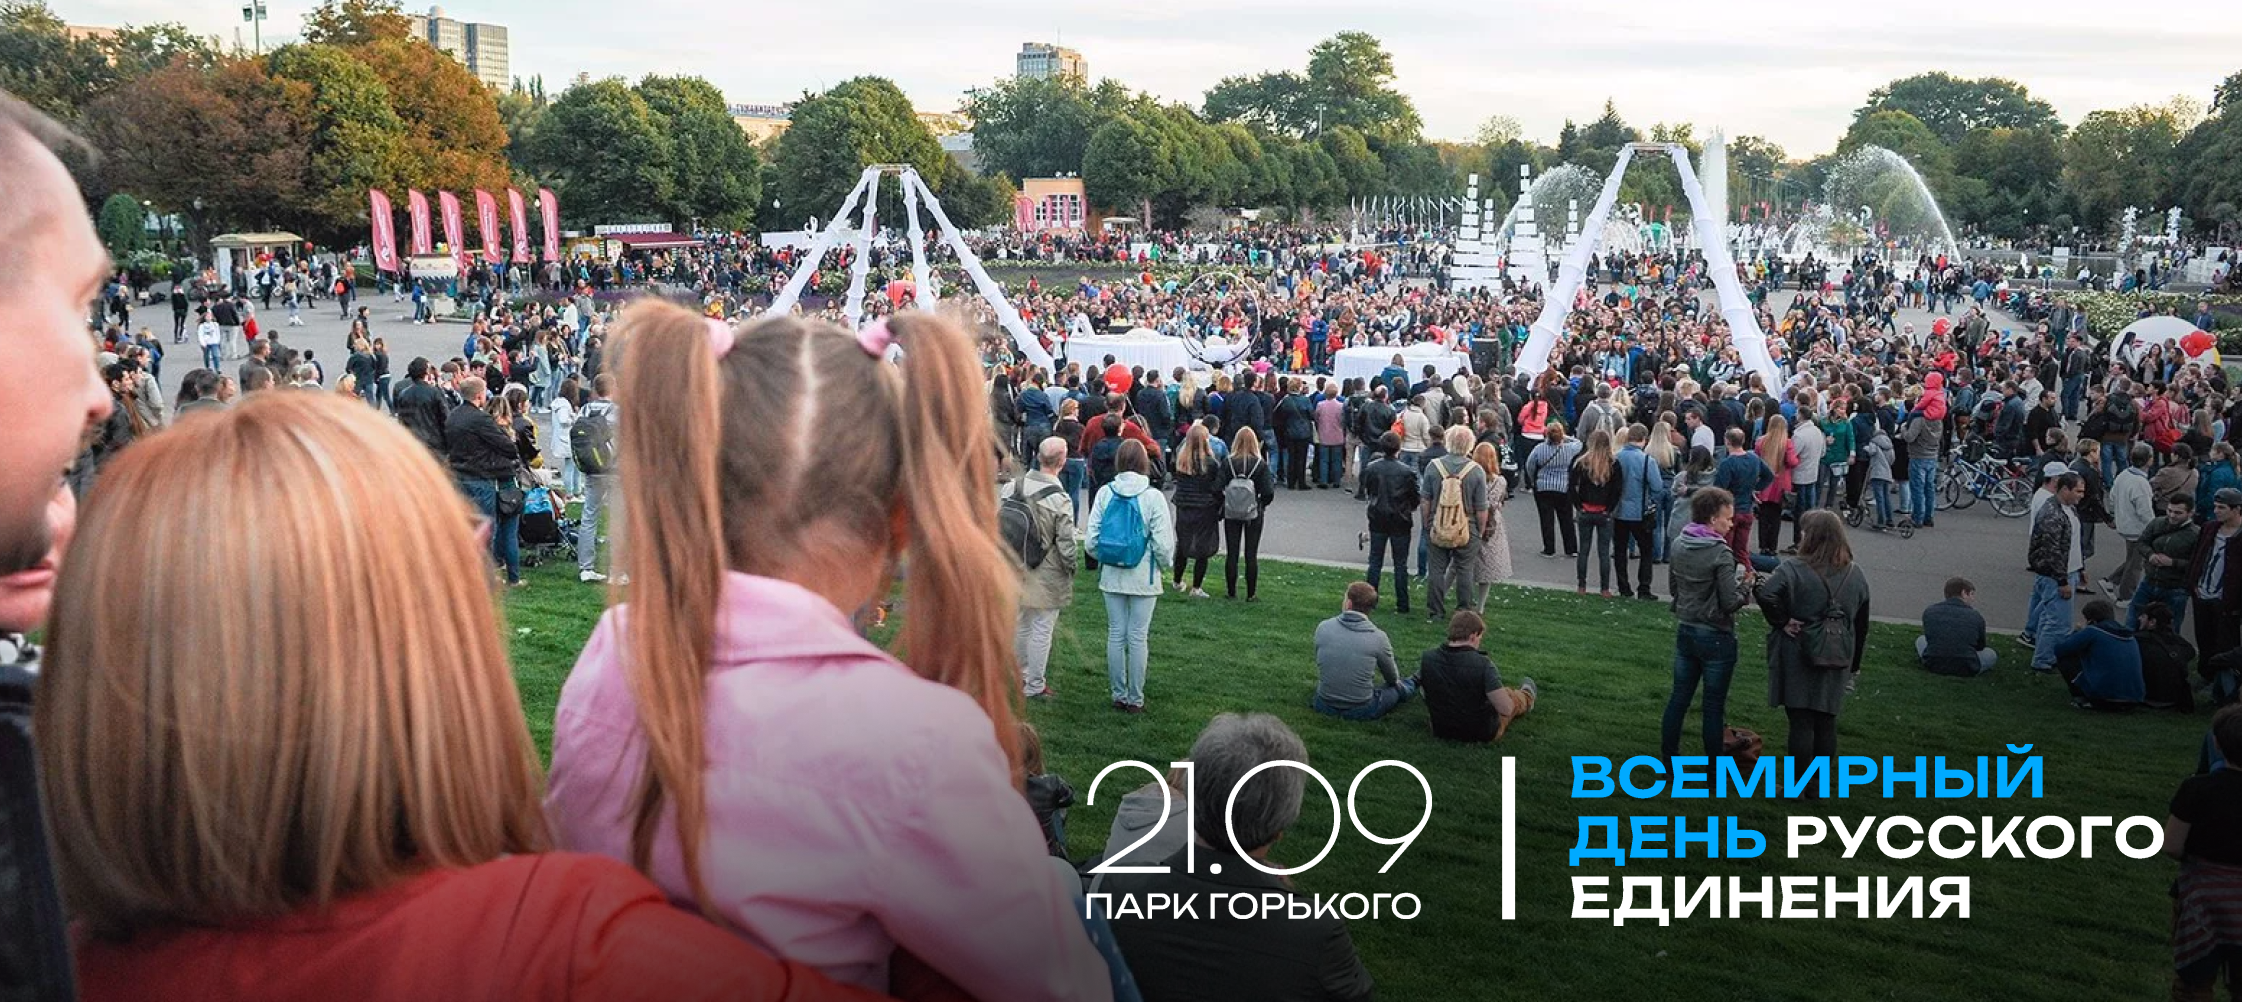 фото: Группа RASA выступит на Всемирный день русского единения в Москве